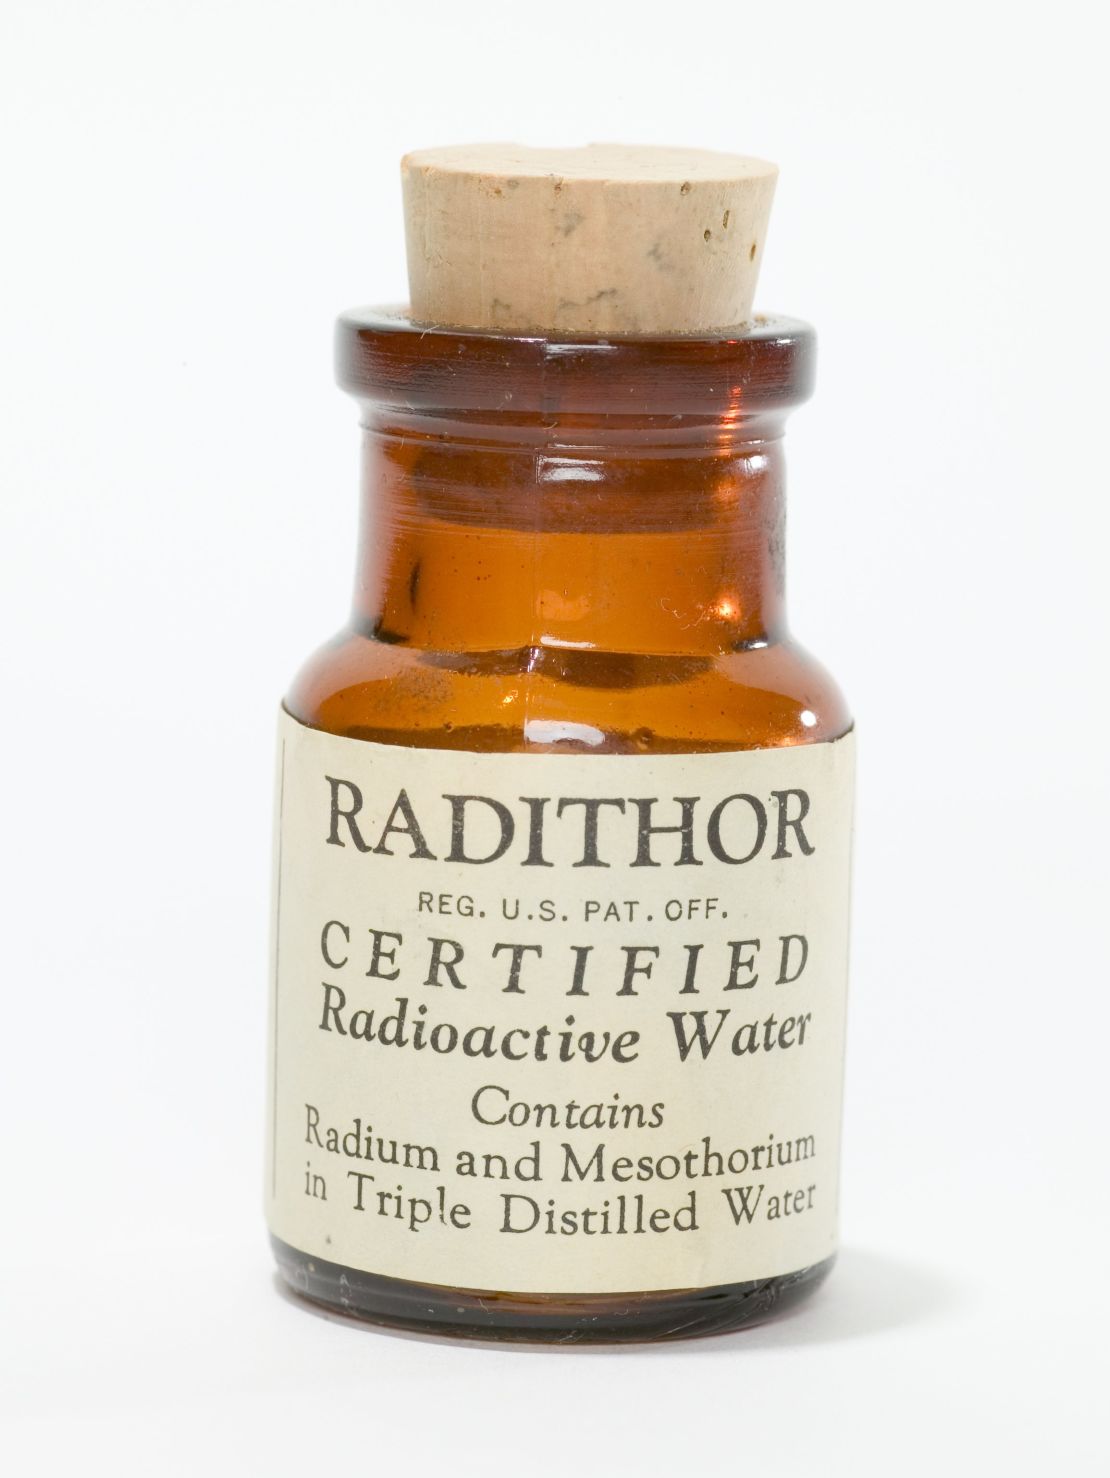 A bottle of Radithor.